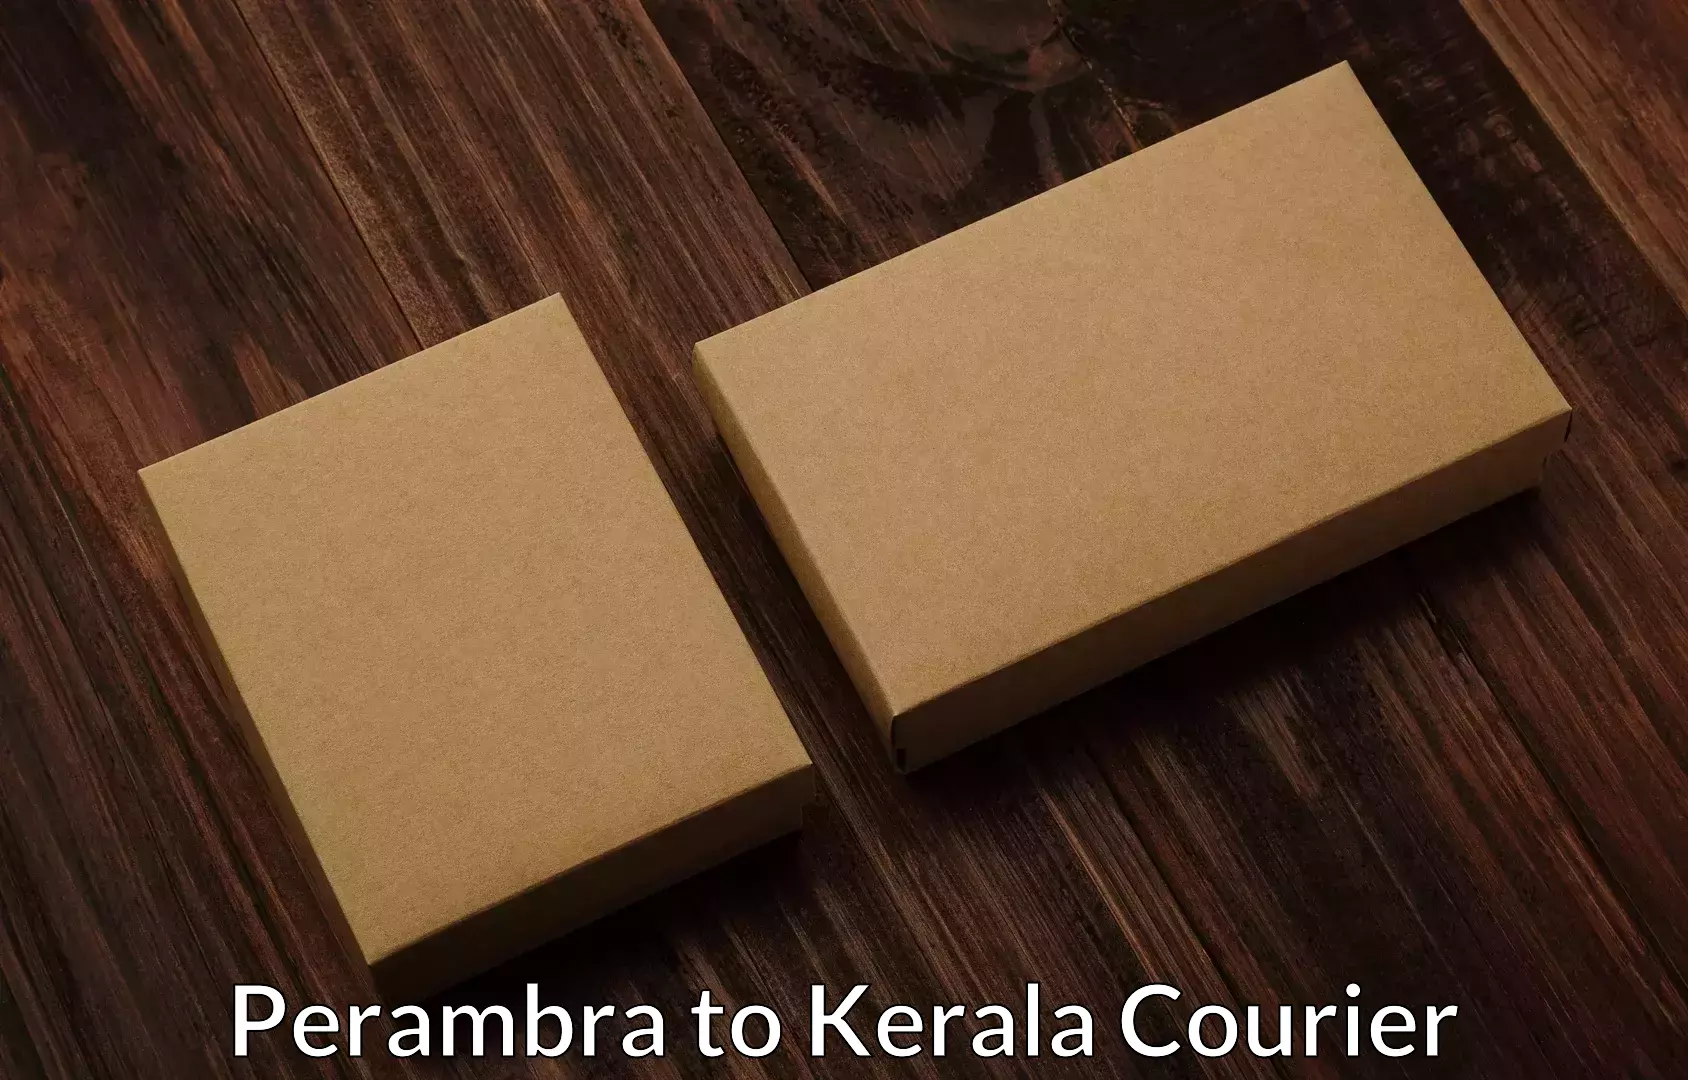 Furniture logistics Perambra to Alappuzha